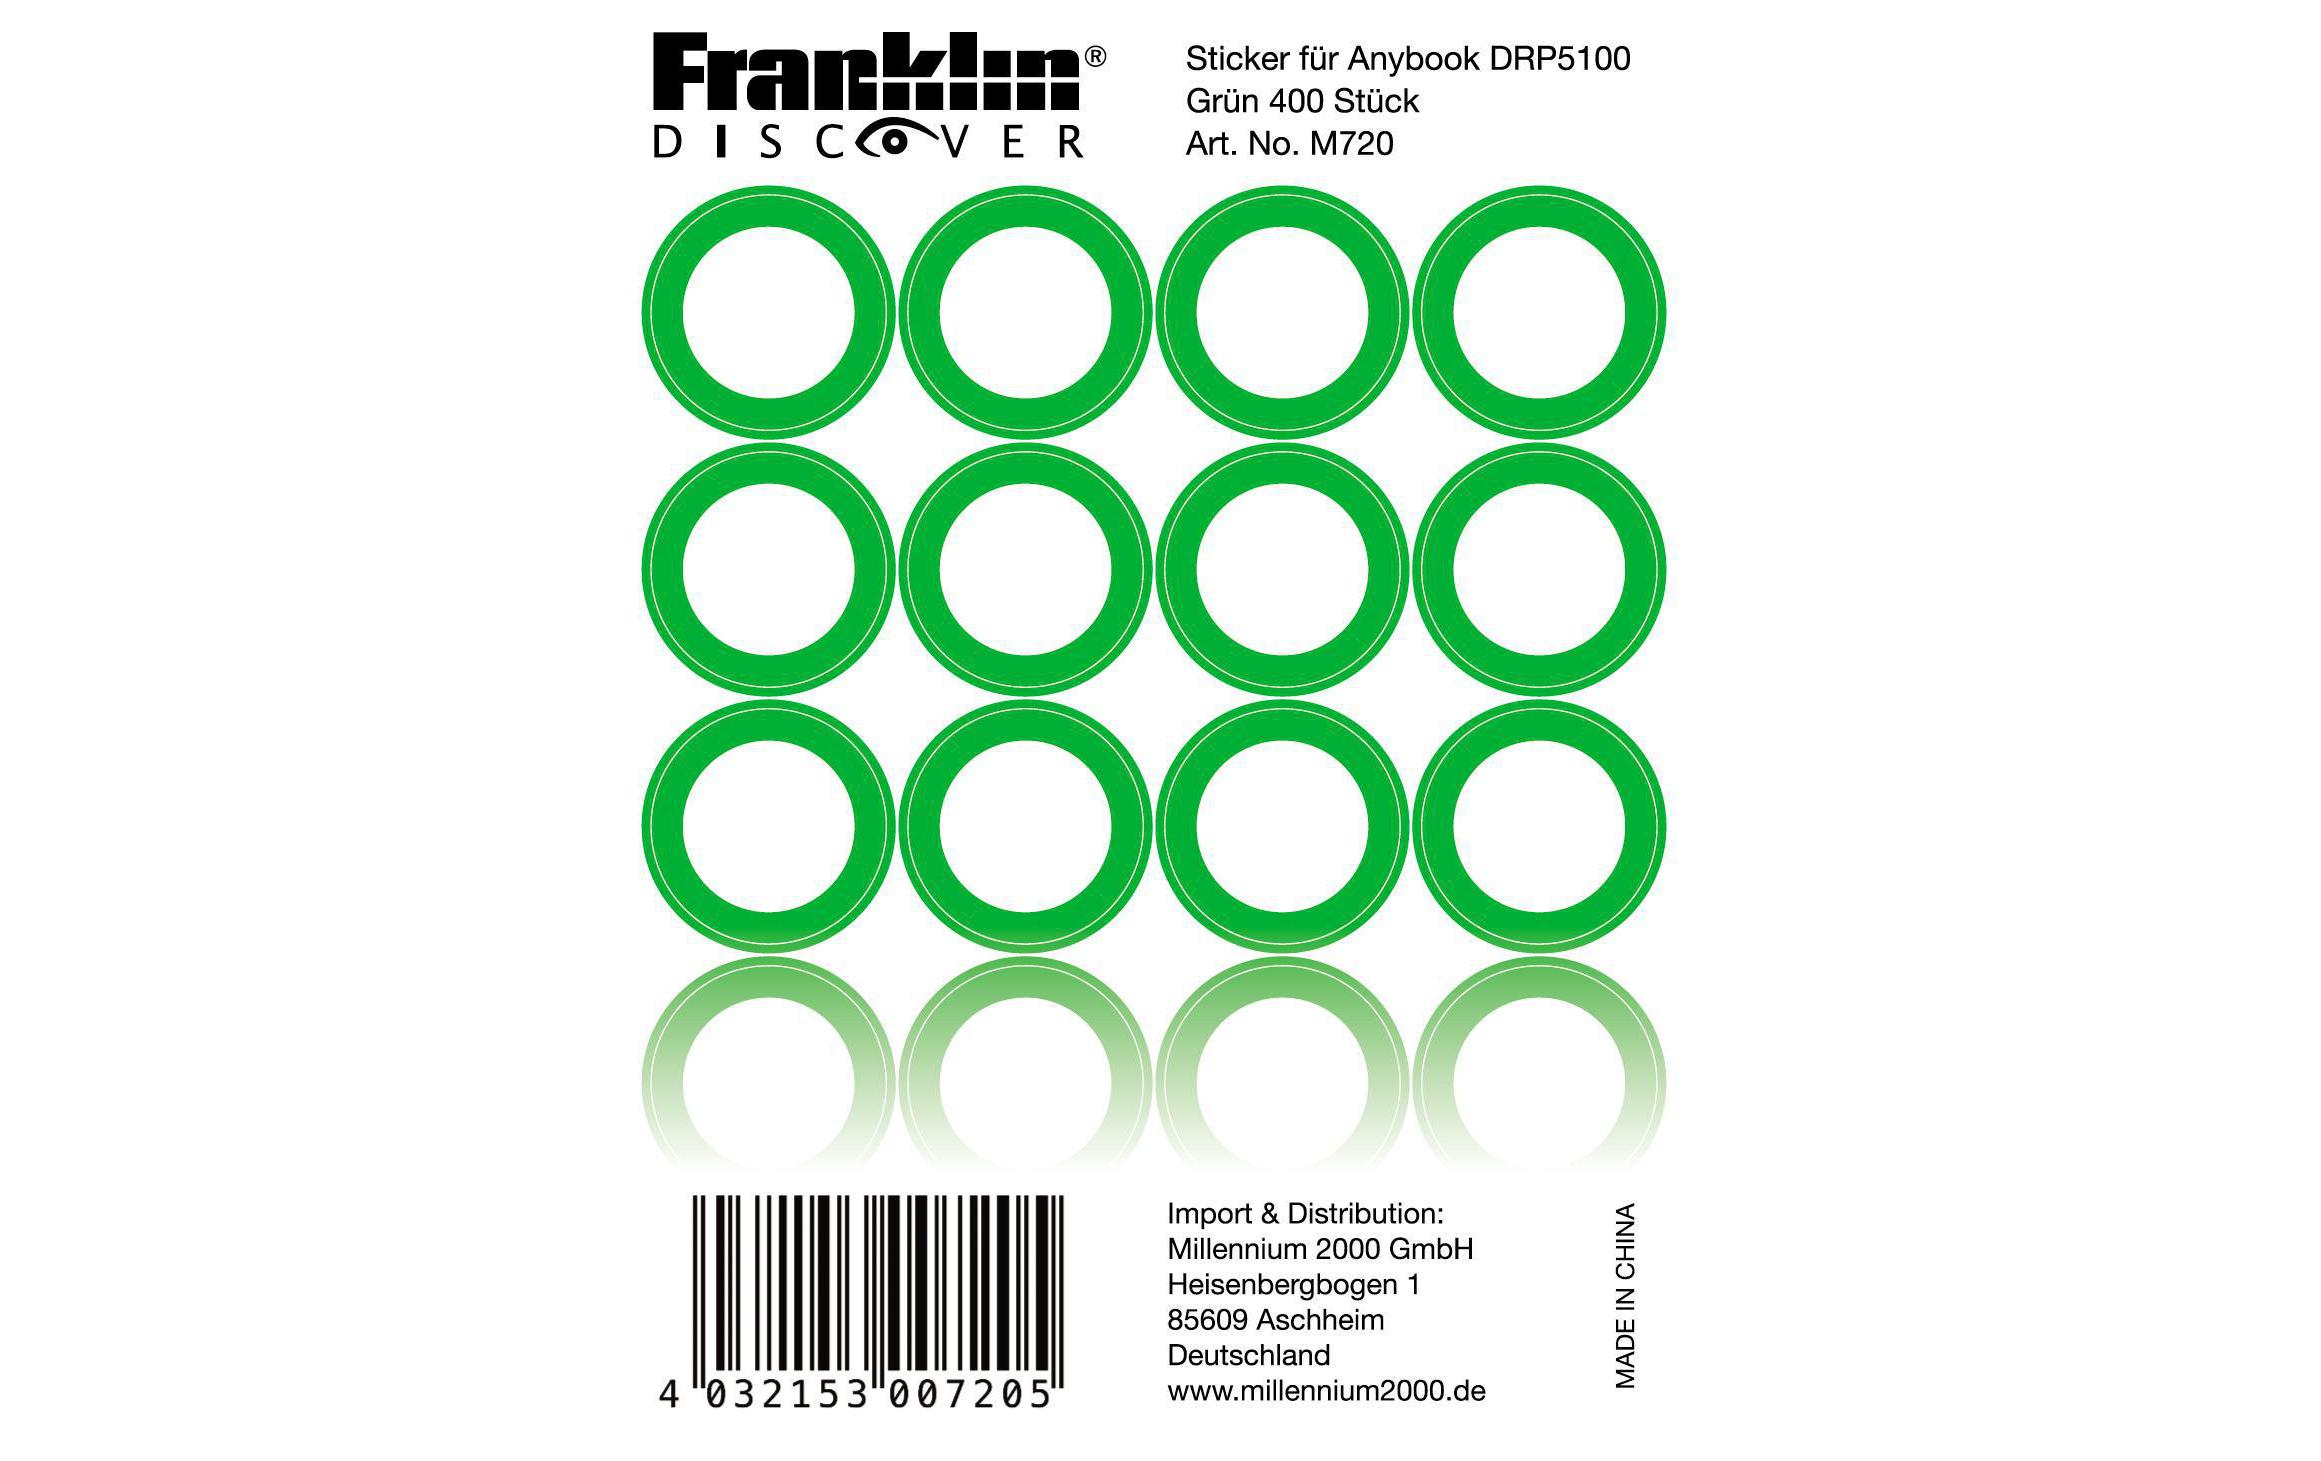 Franklin Sticker für AnyBook DRP-5100 Grün